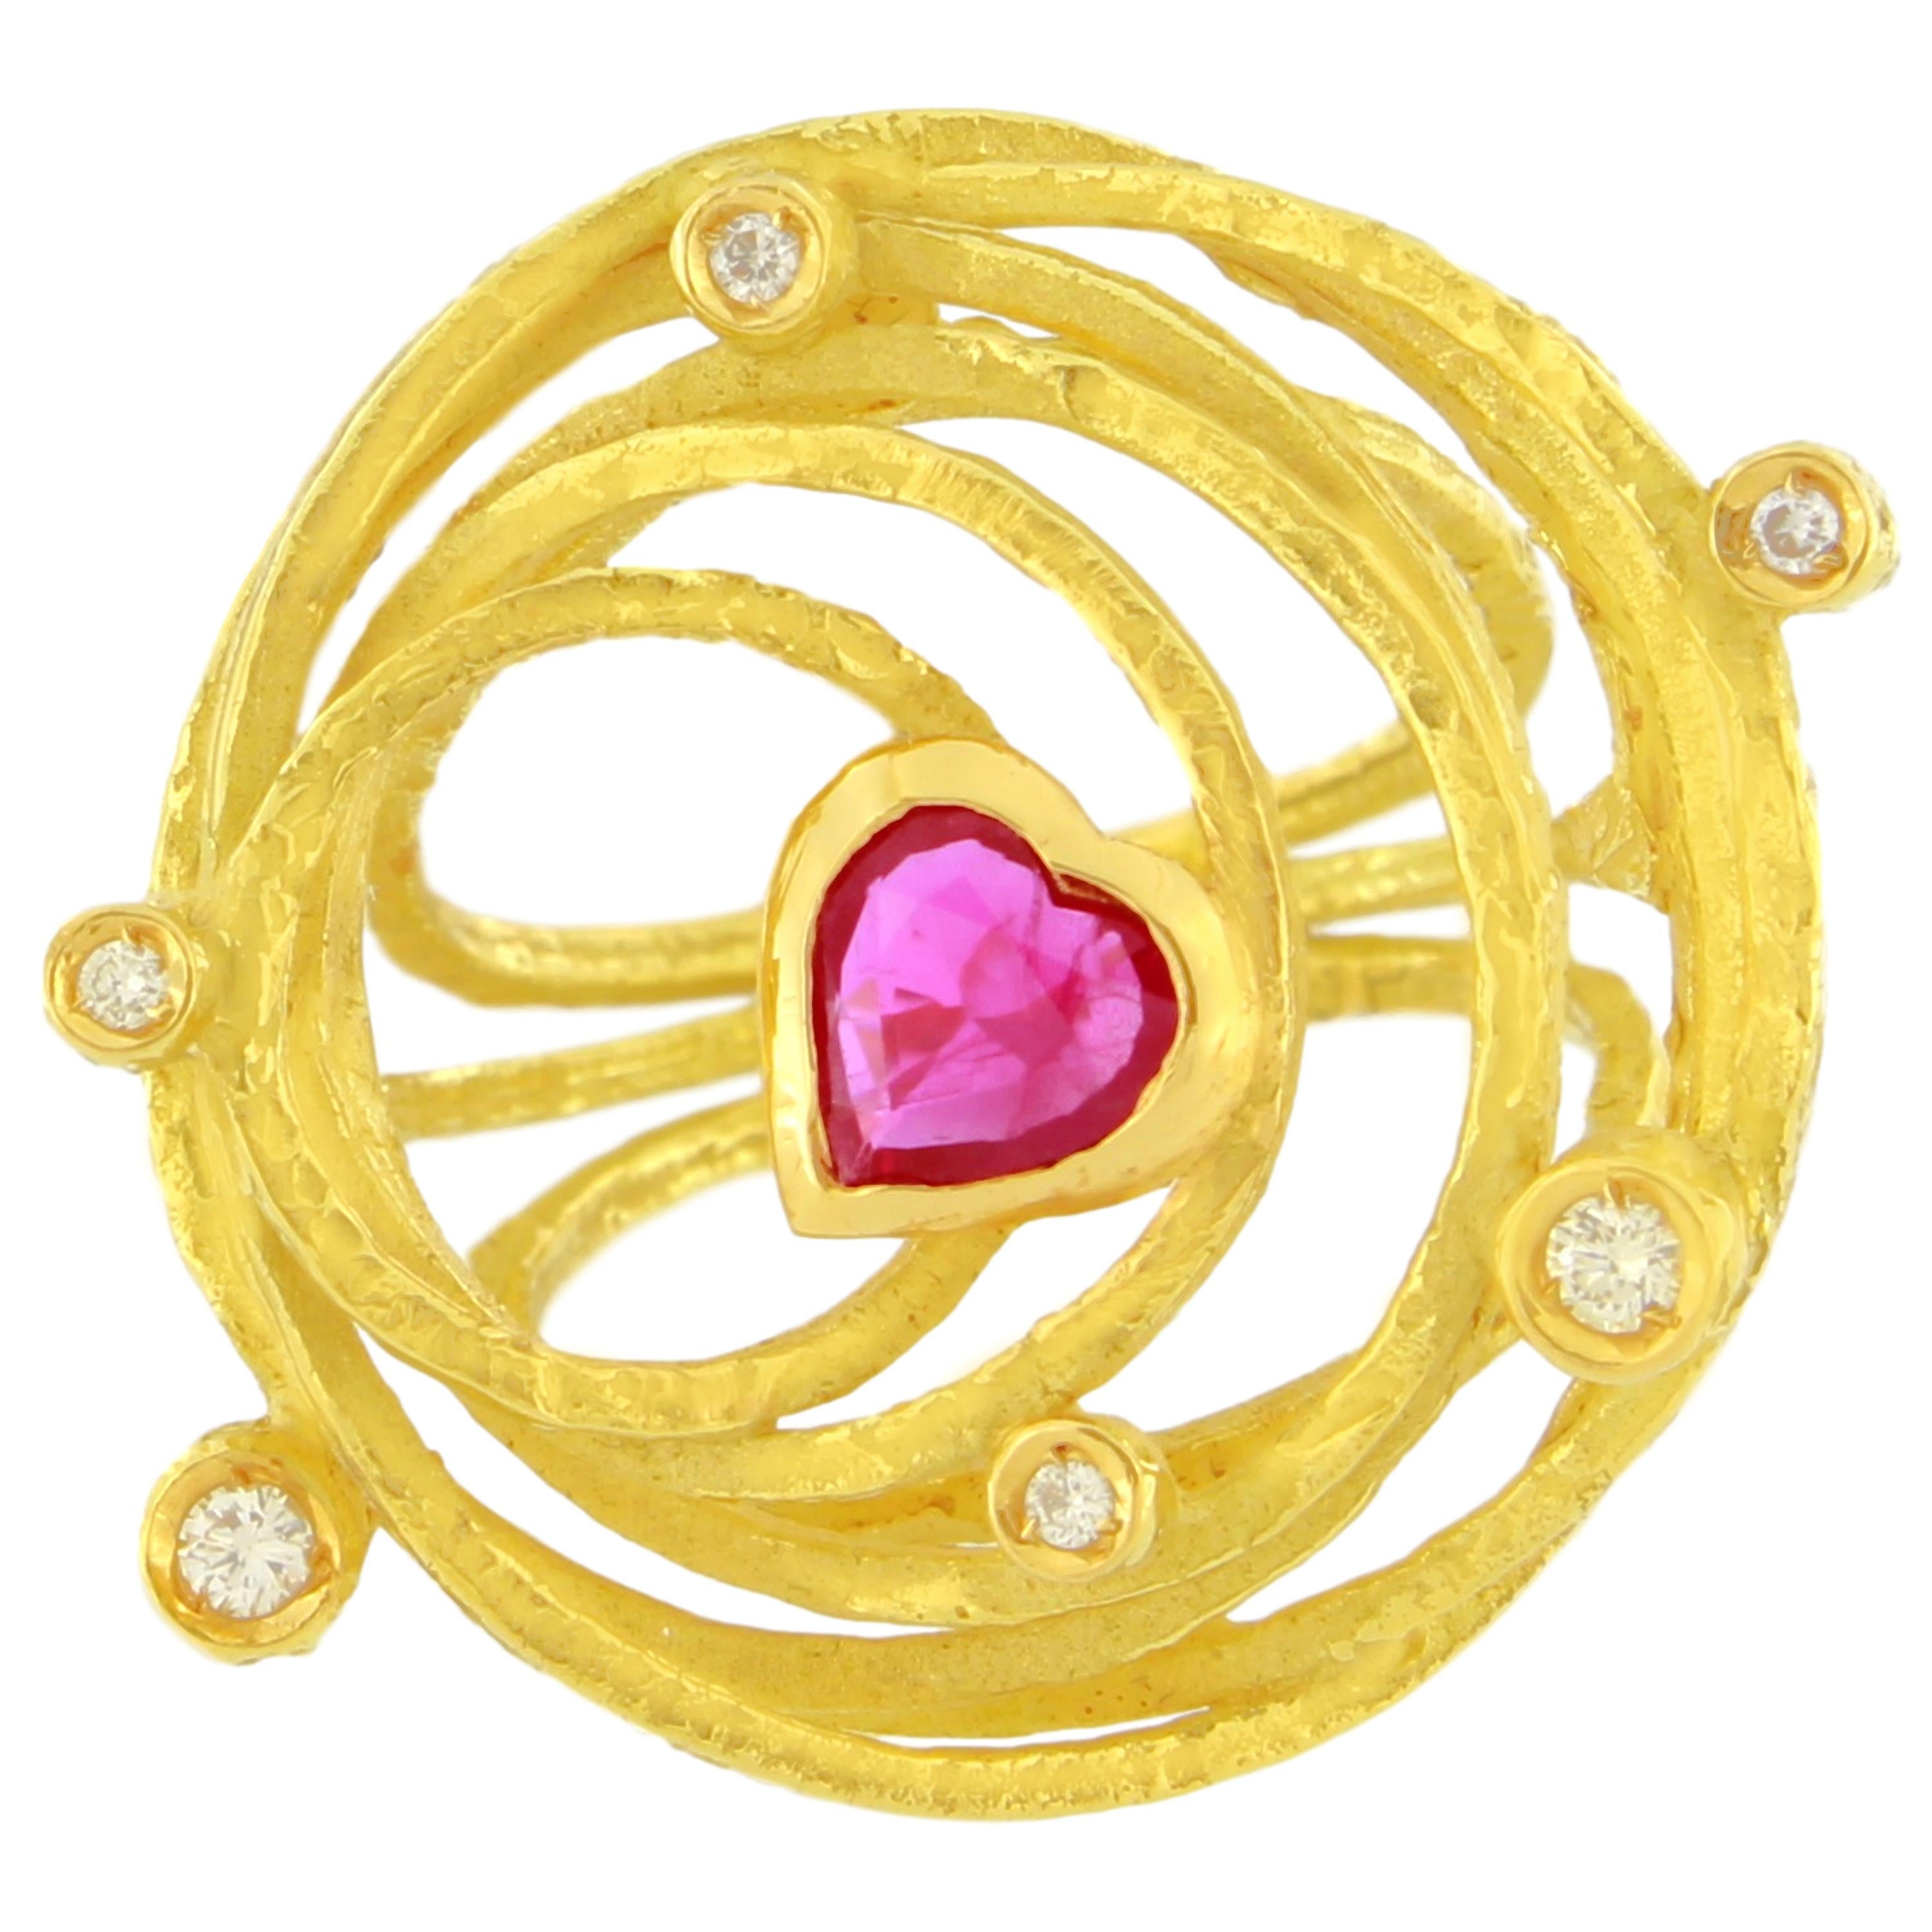 Sacchi Großer Herz-Rubin und Diamanten Edelstein 18 Kt Gelbgold Cocktail-Ring